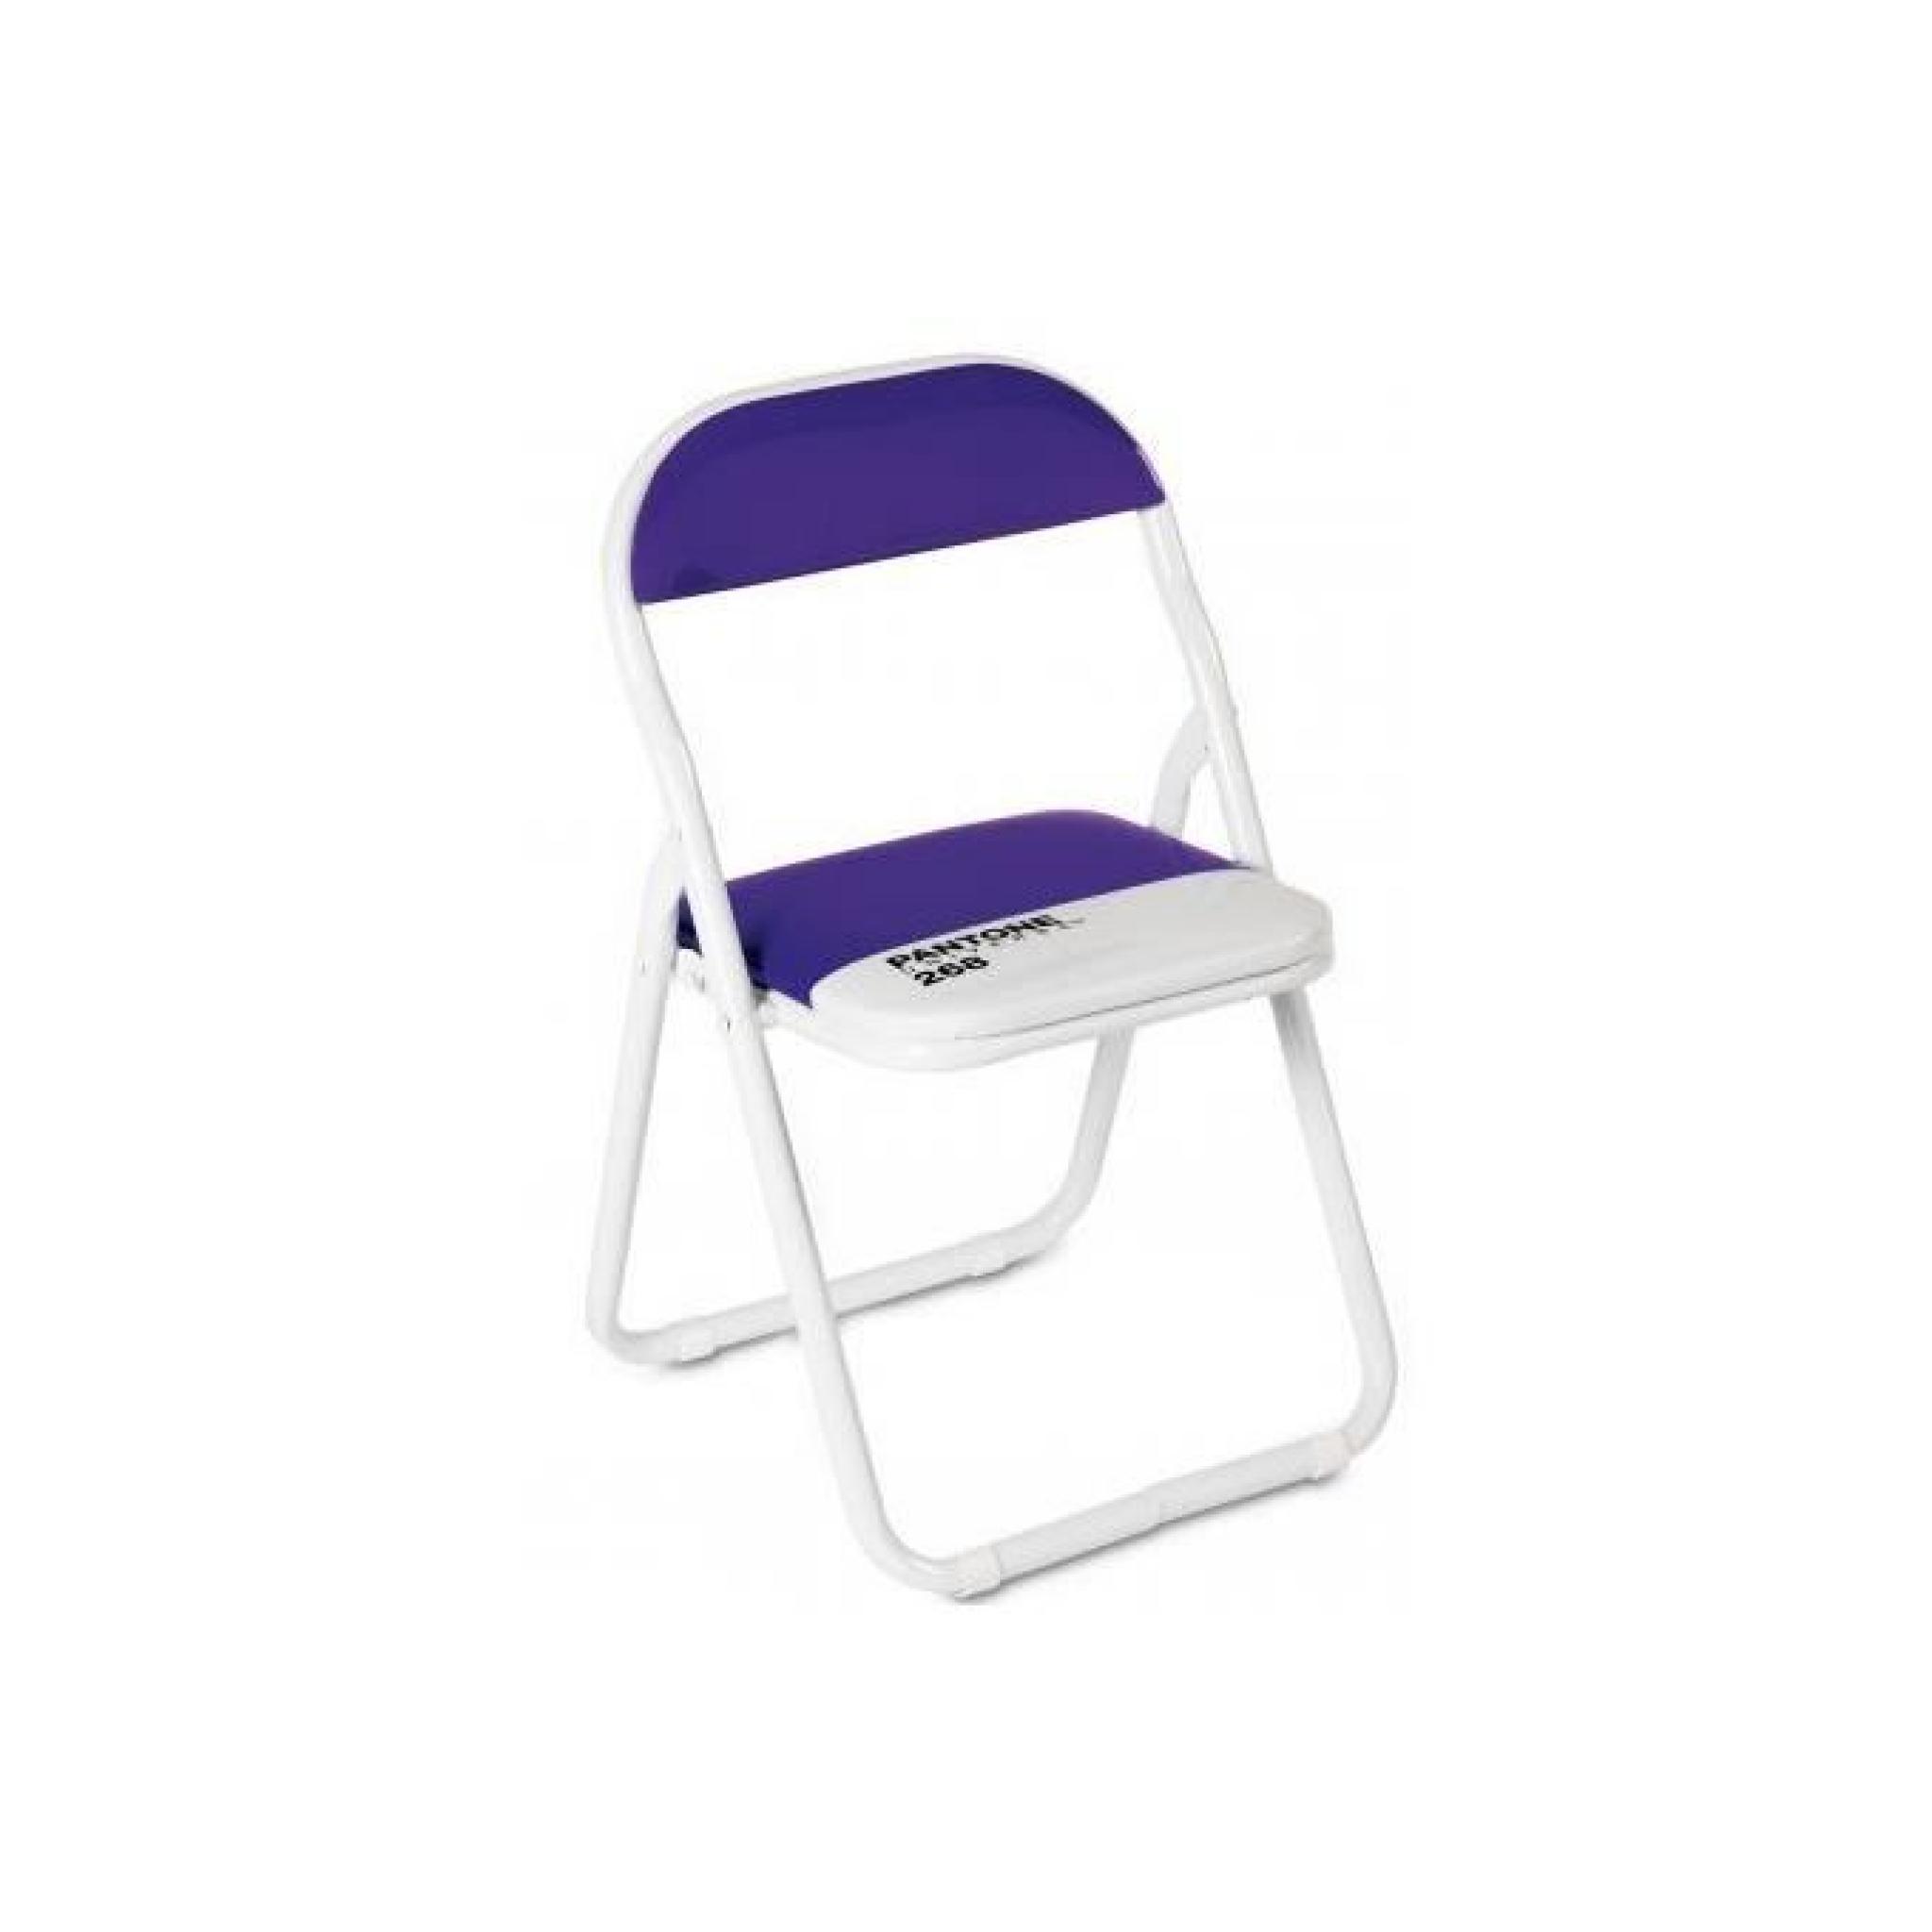 Petite chaise pliante Pantone violette Firenze Seletti